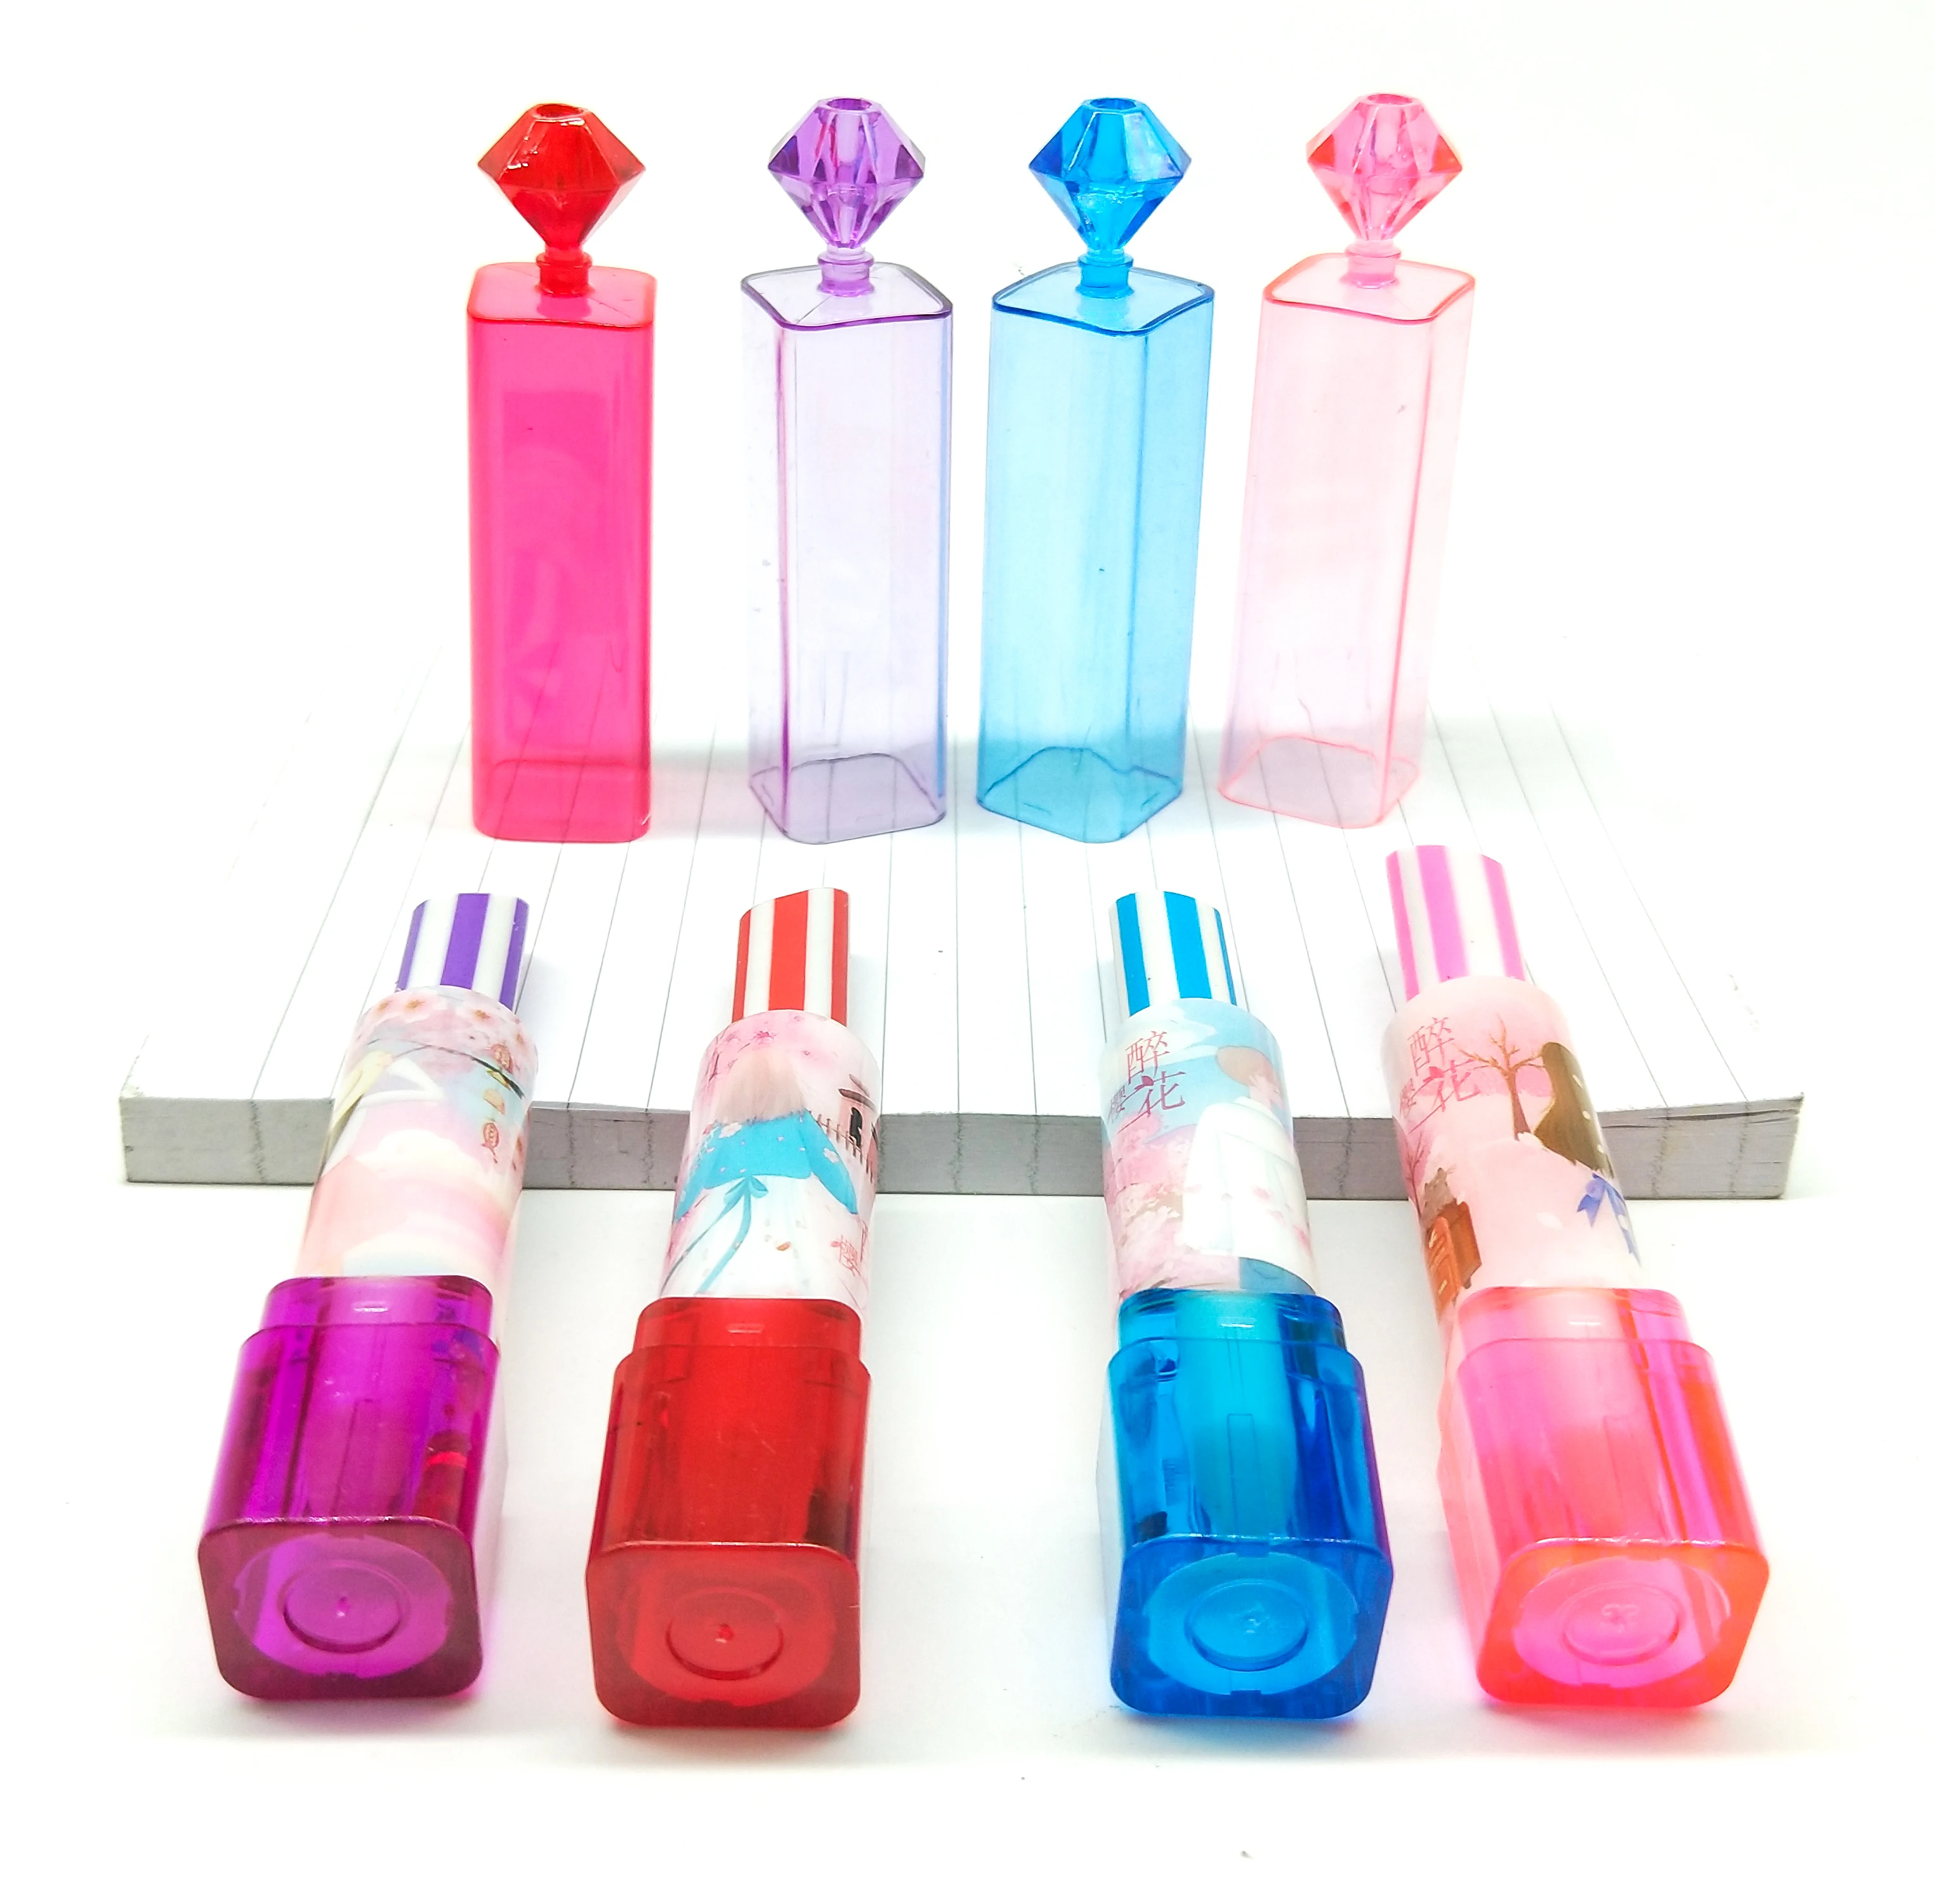 For Rose Love Lipstick Shape Eraser Novelty Eraser Creative Gift For Children 